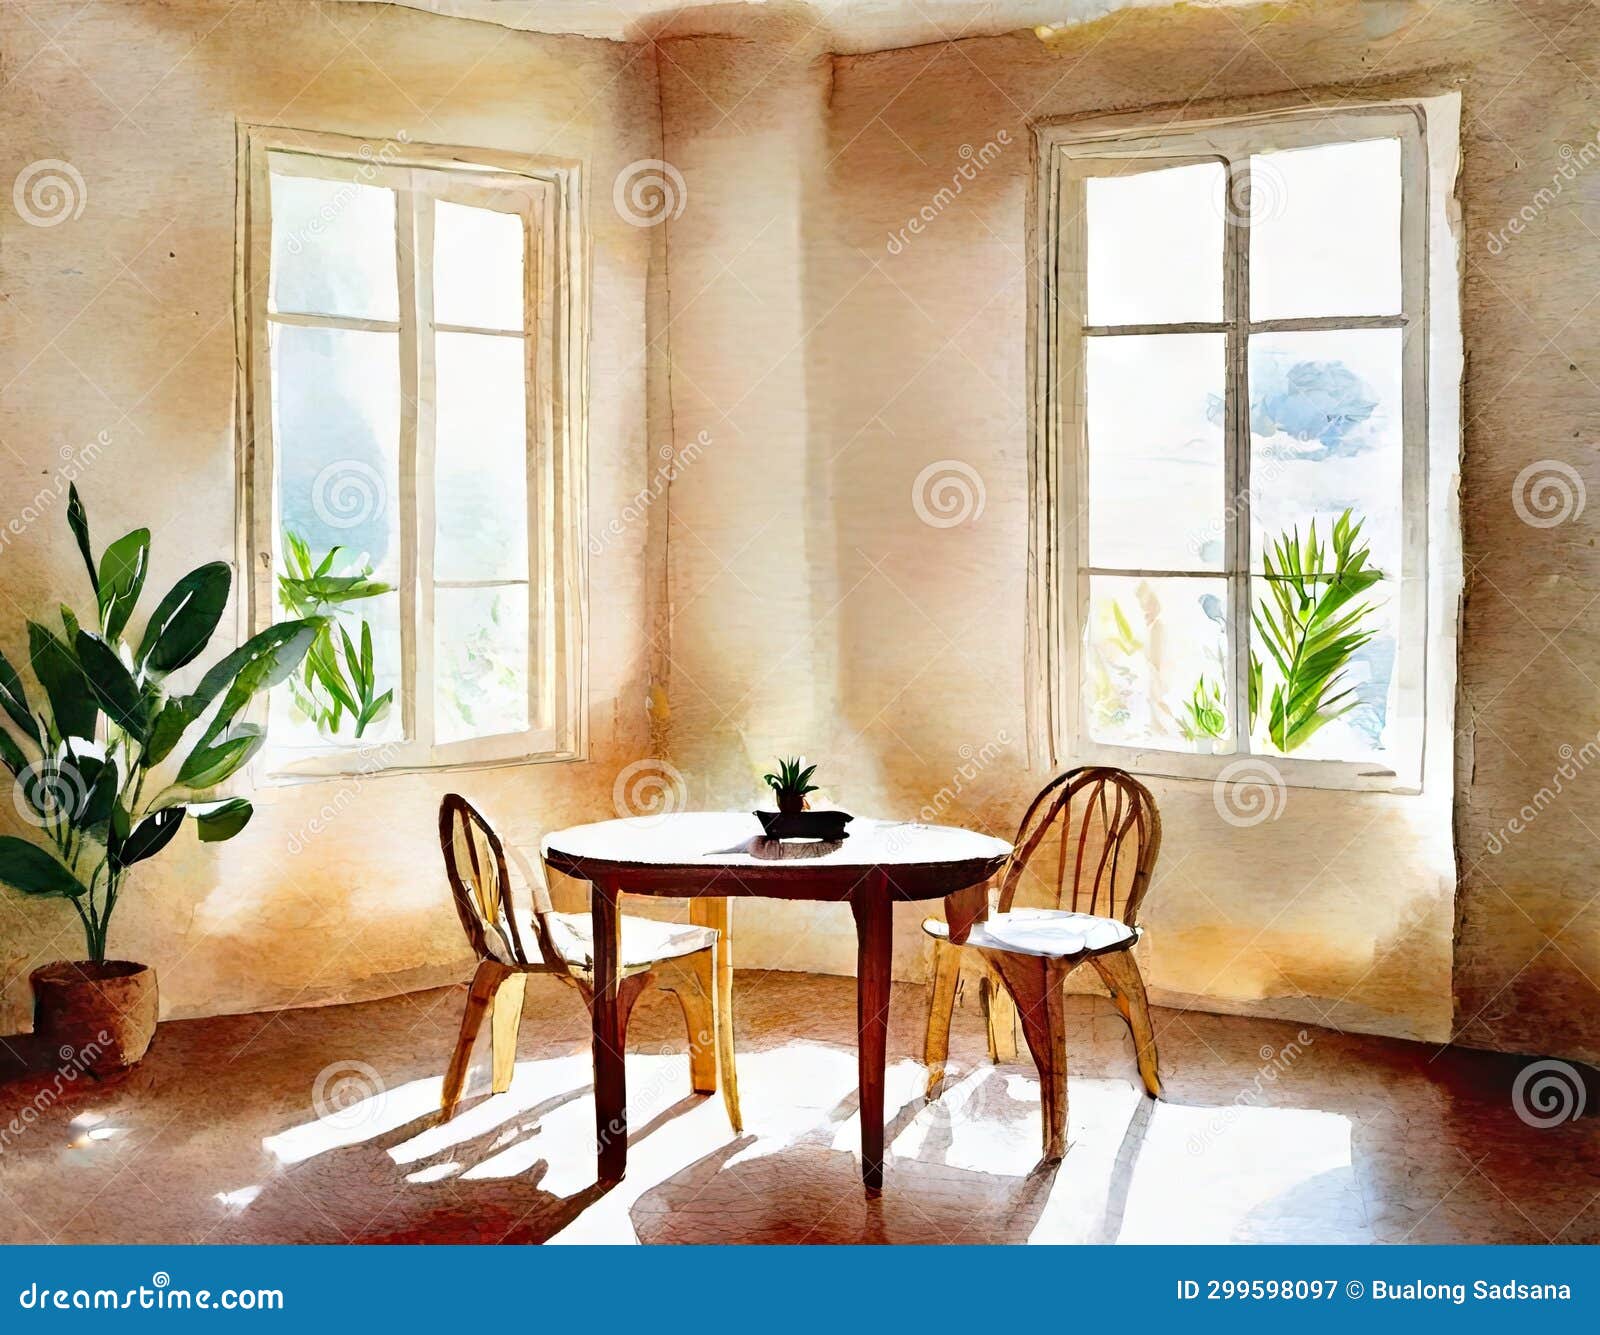 watercolor of interior de casa estilo boho